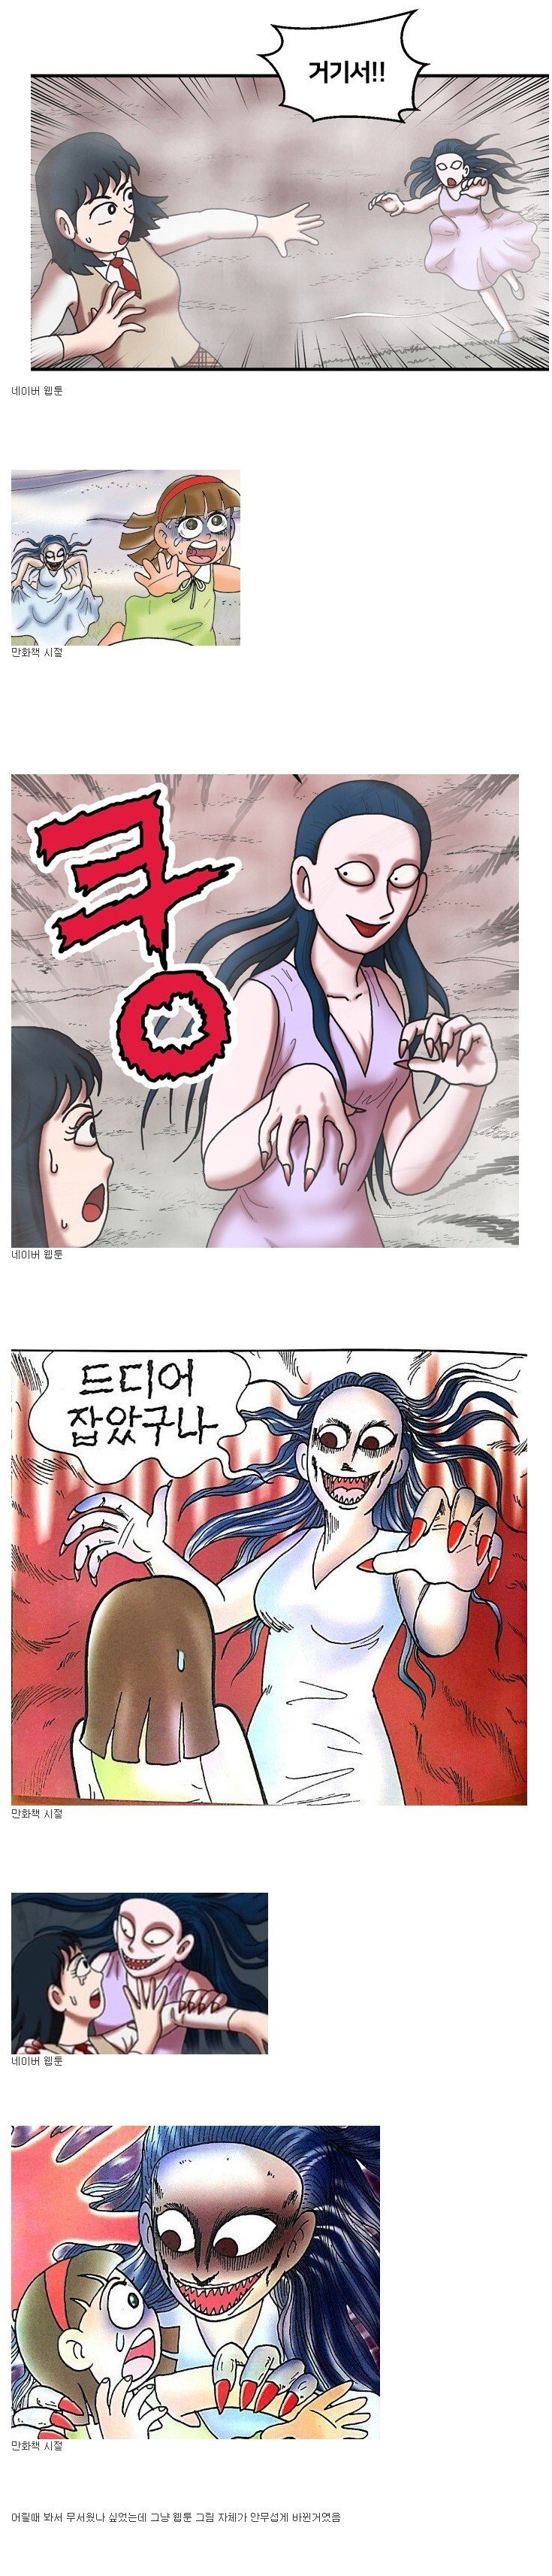 무서운게 딱좋아 웹툰 vs 만화책 비교.jpg